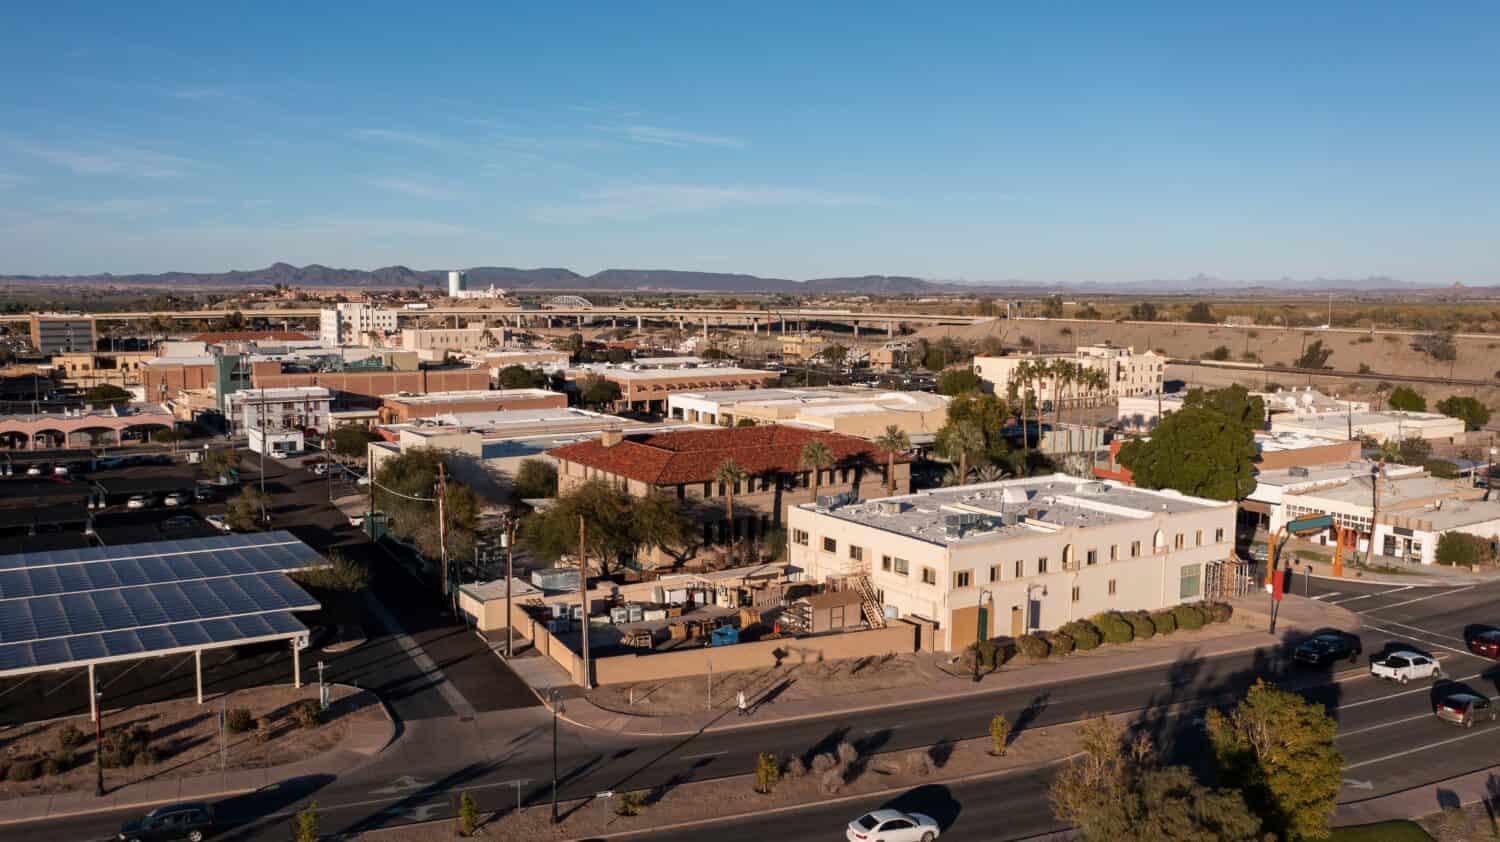 Tramonto vista aerea del paesaggio urbano del centro di Yuma, Arizona, Stati Uniti.